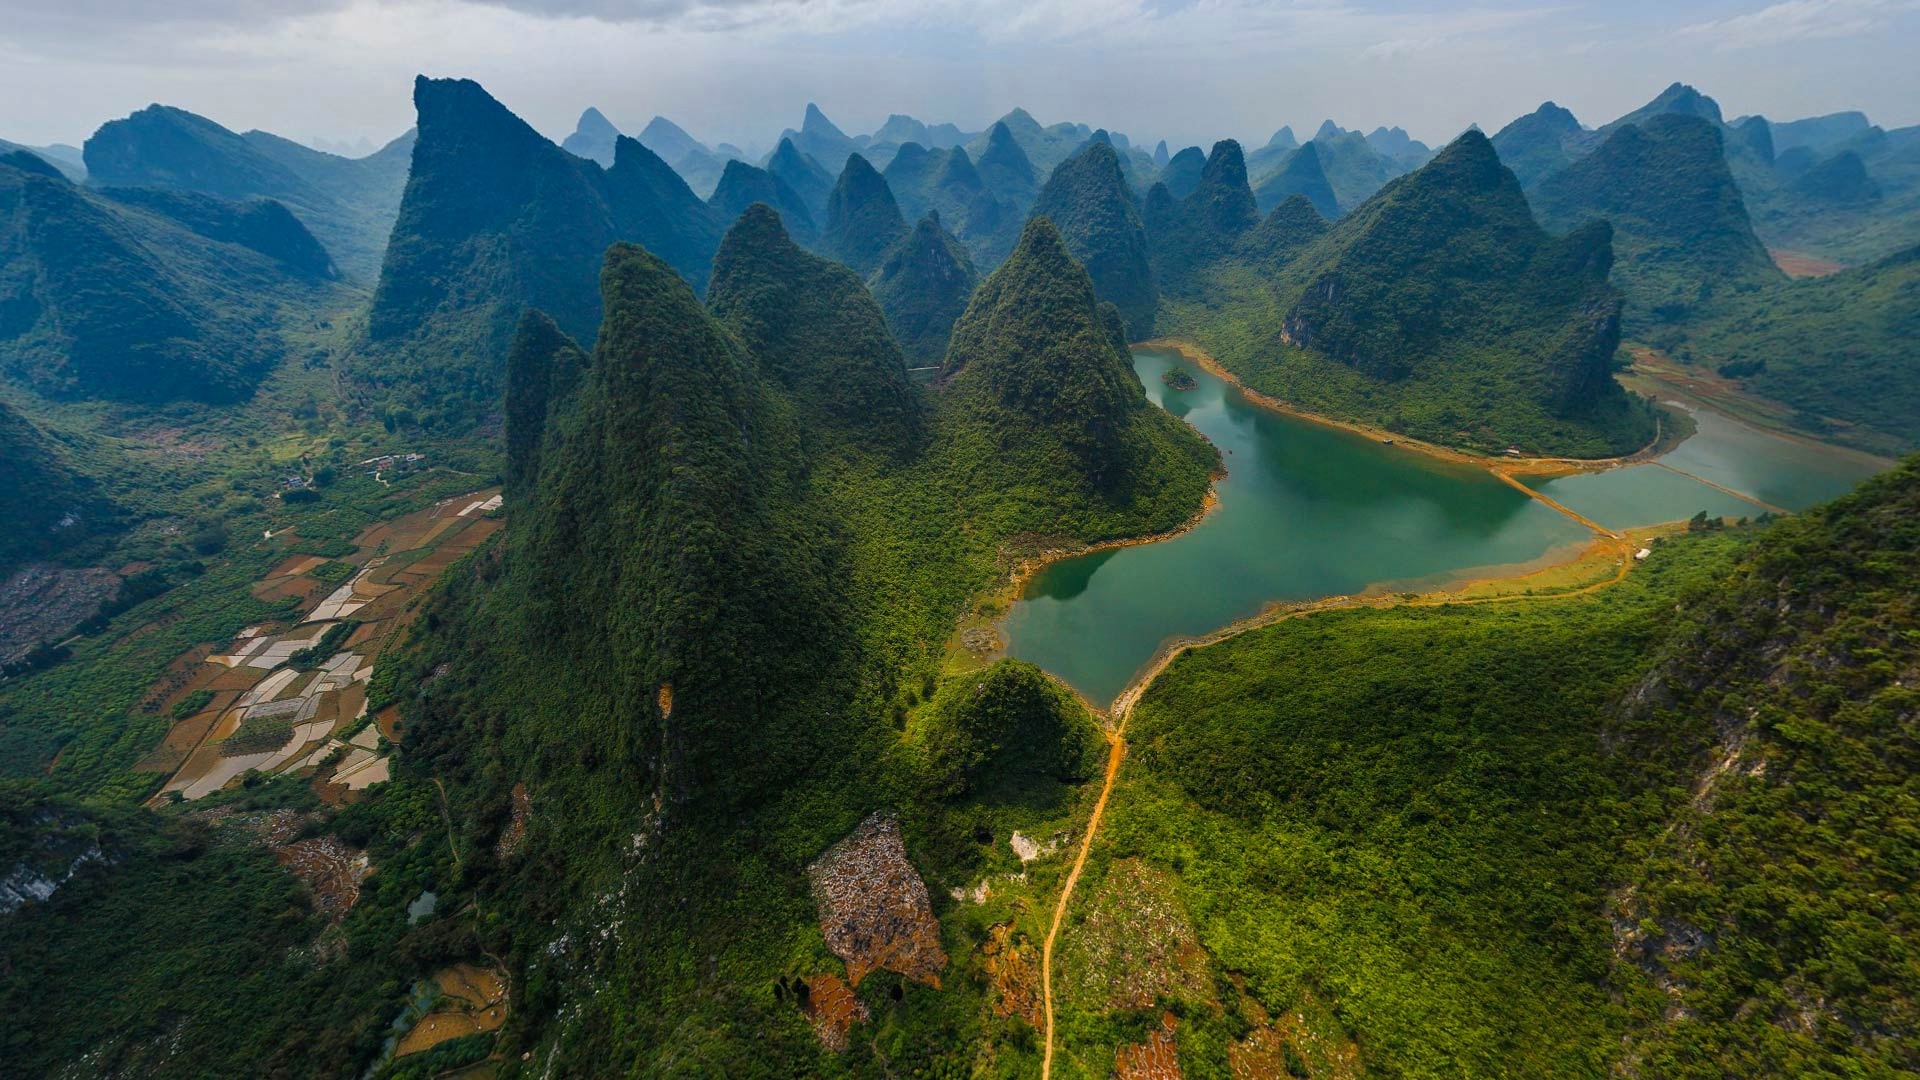 桂林山水风景桌面壁纸图片